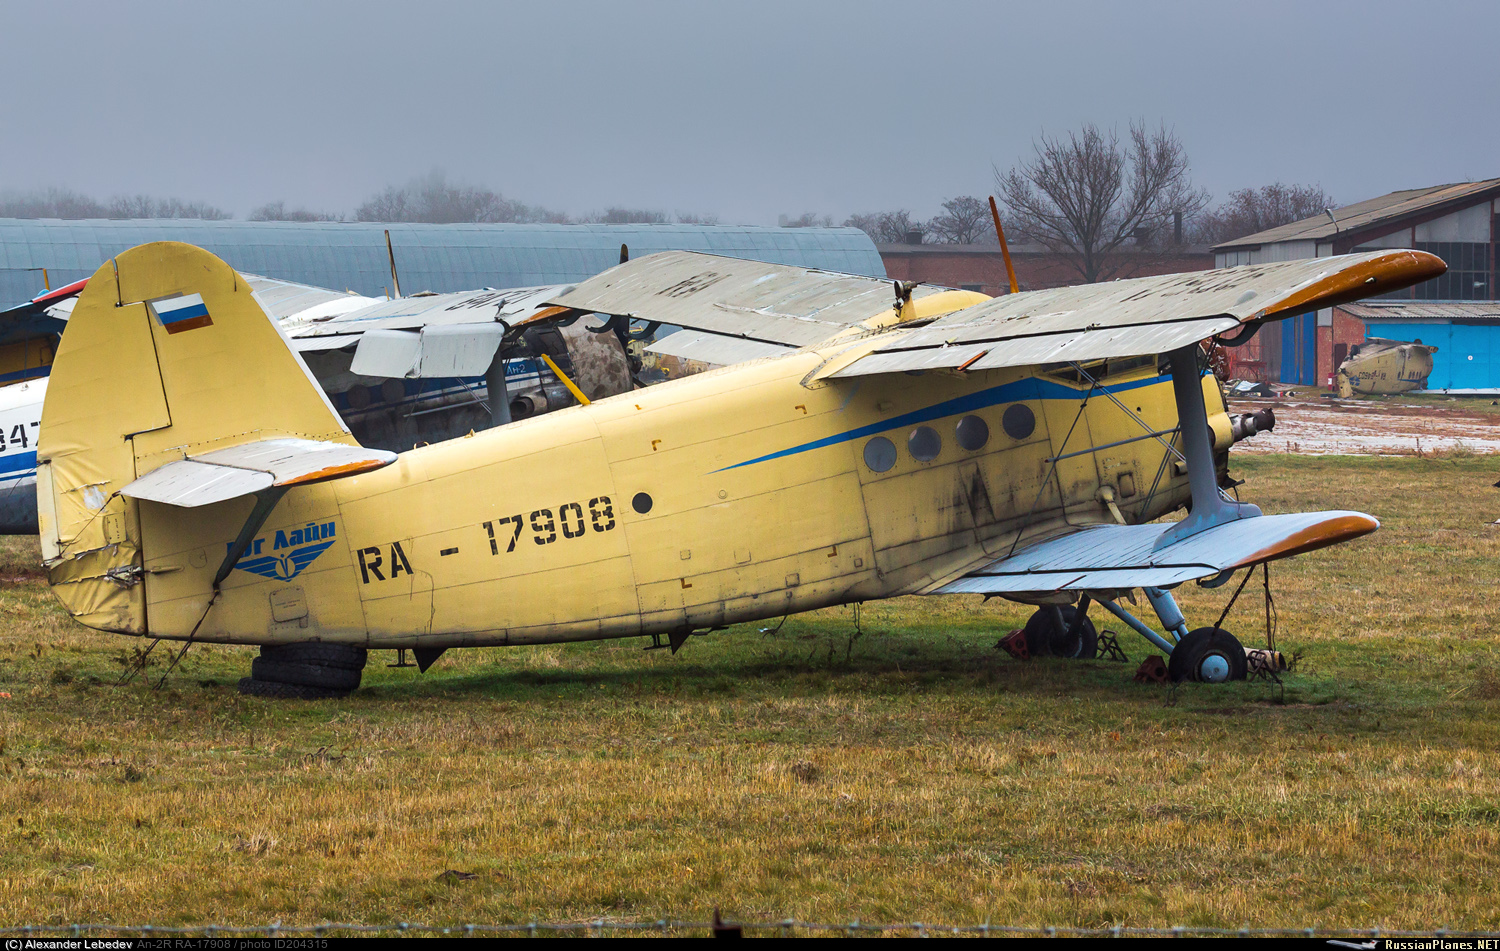 Юг лайн. Ra301. Тр-301 самолет. АН 2 желтый Монголии. АН 2 ra -40729 все фото.